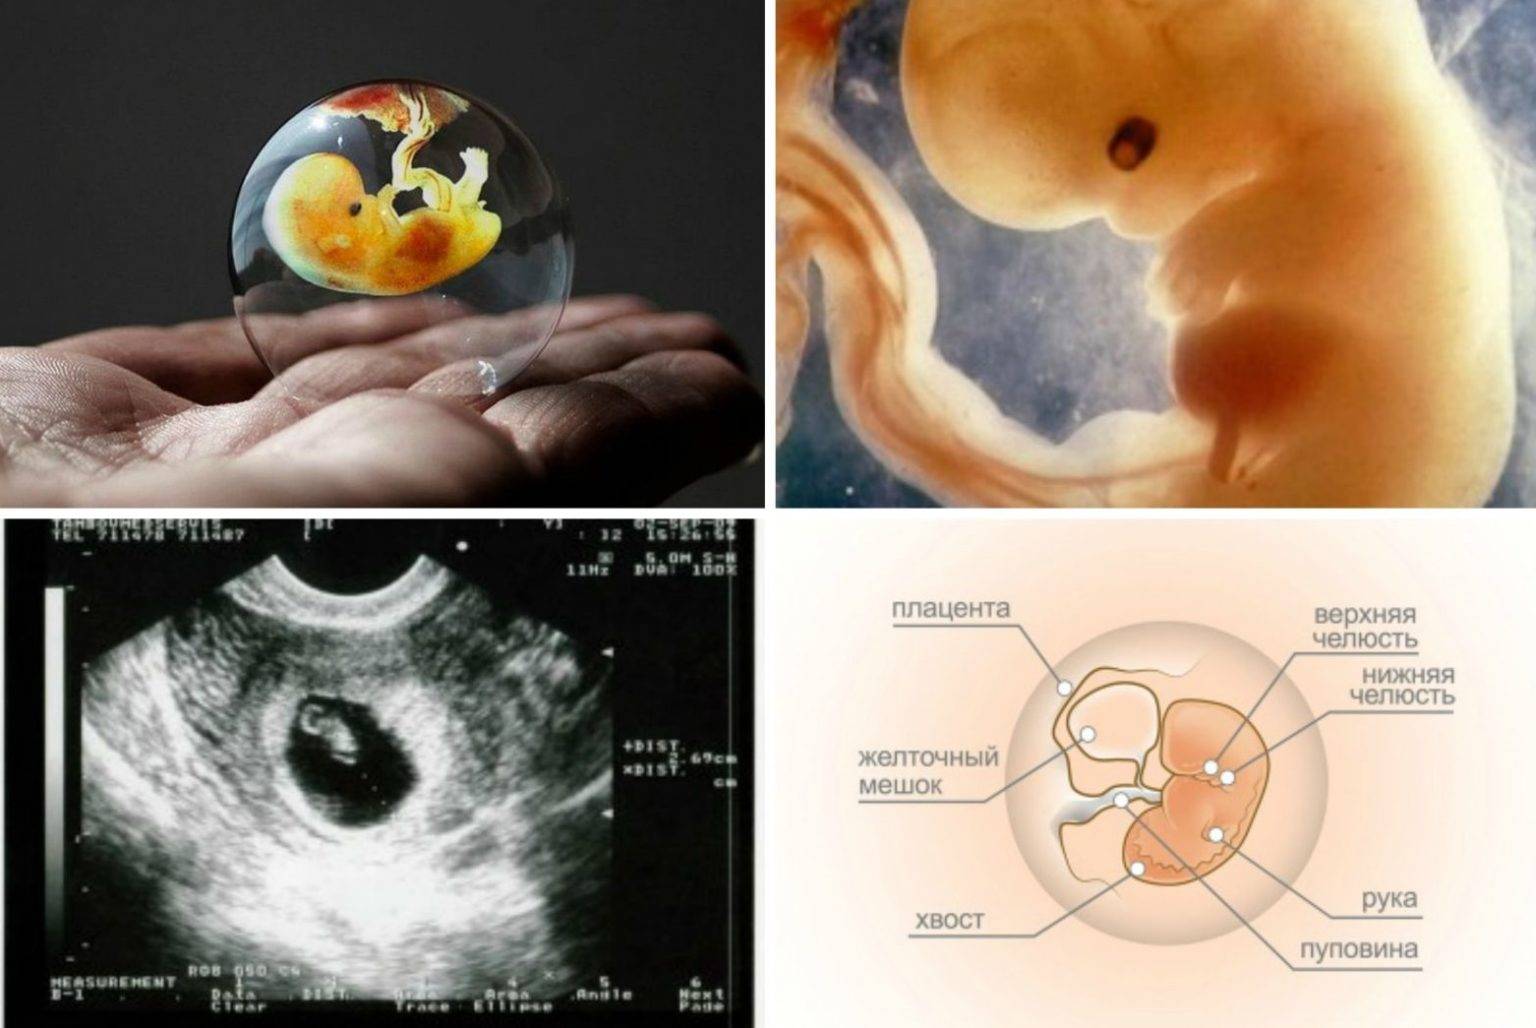 8 неделя беременности: что происходит с малышом и мамой, фото, развитие плода